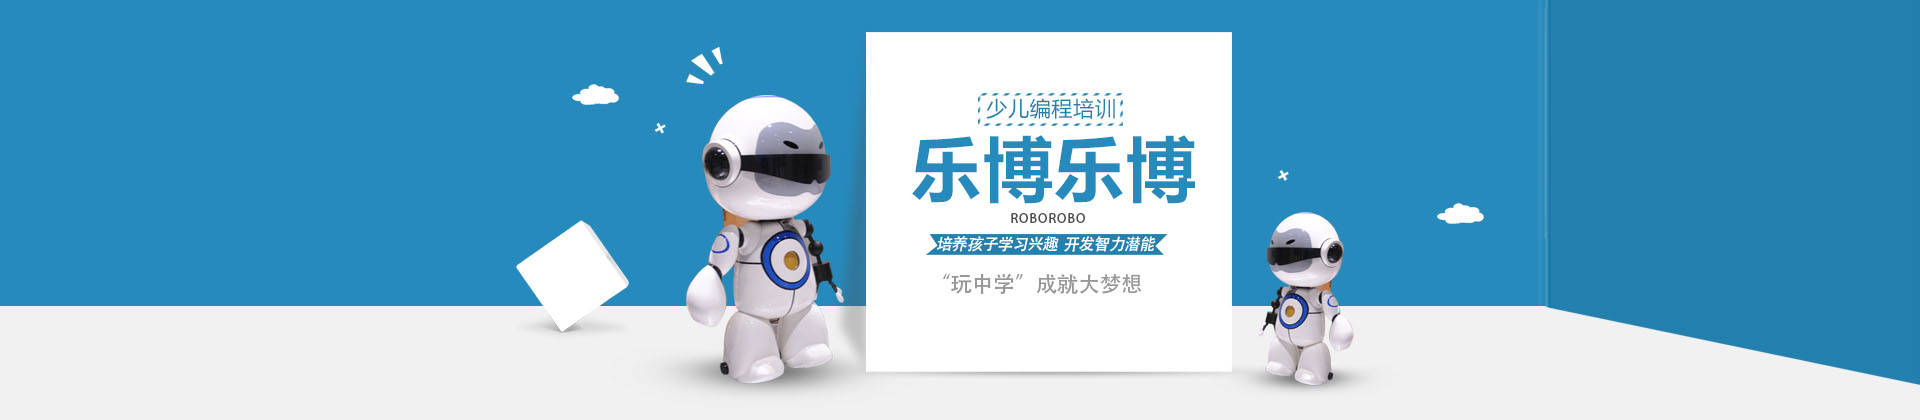 深圳乐博乐博机器人教育